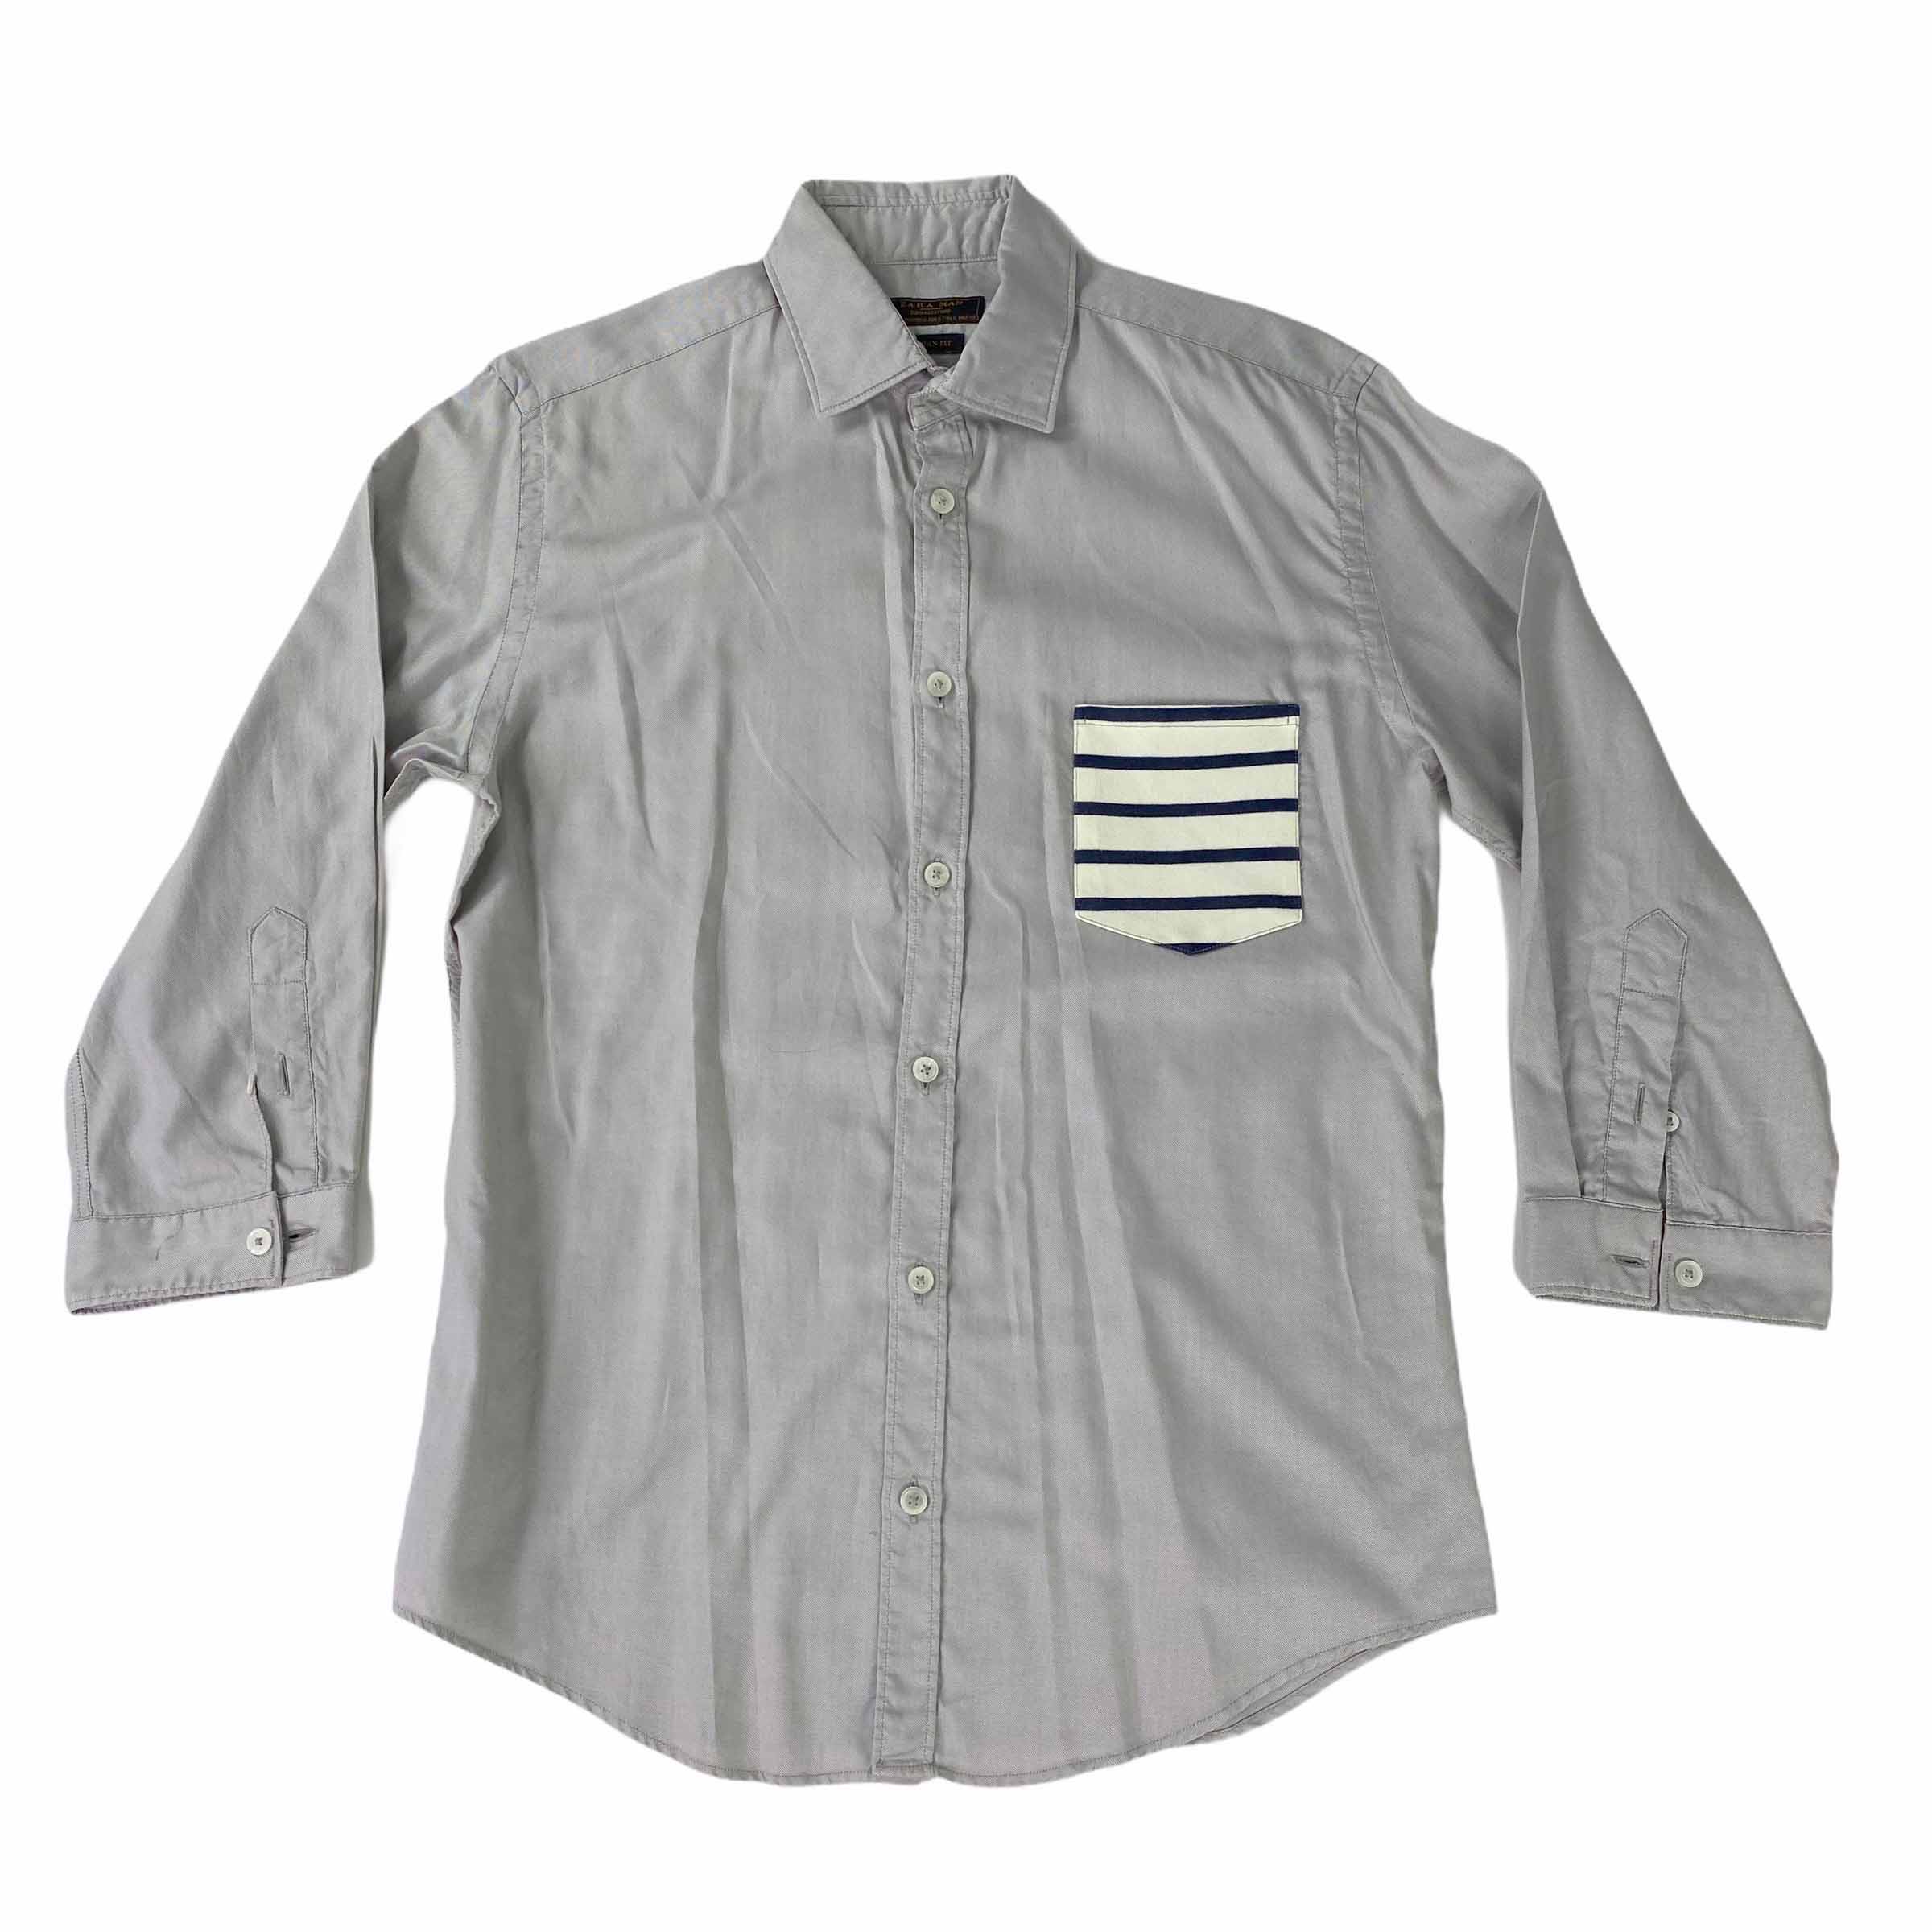 [Zara] Asian Fit Stripe Pocket Grey Shirt - Size S